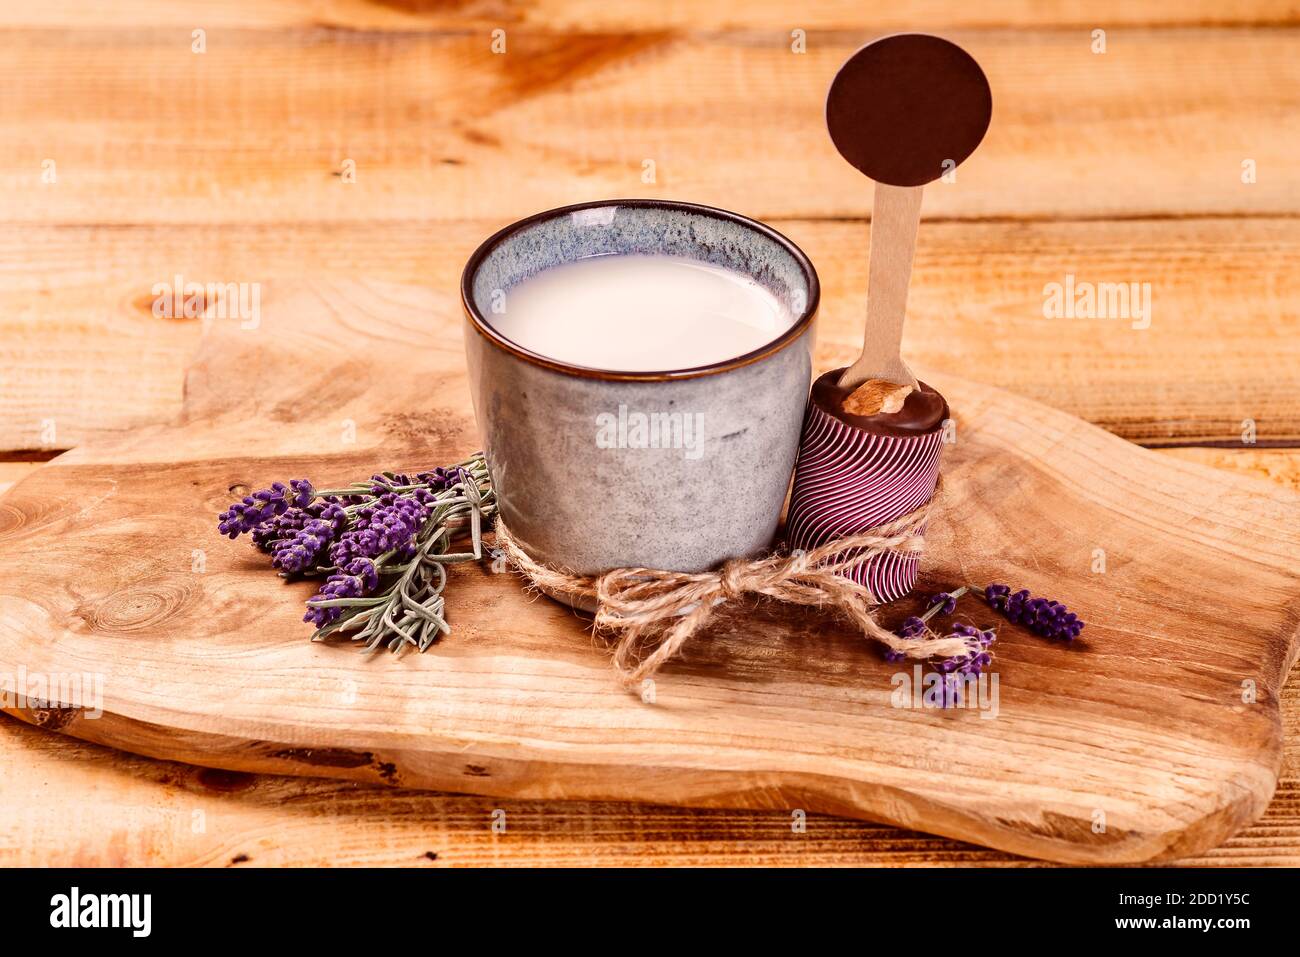 Milch in einer Tasse neben Schokolade auf einem Küchenschneidebrett auf einem hölzernen Hintergrund. Stockfoto